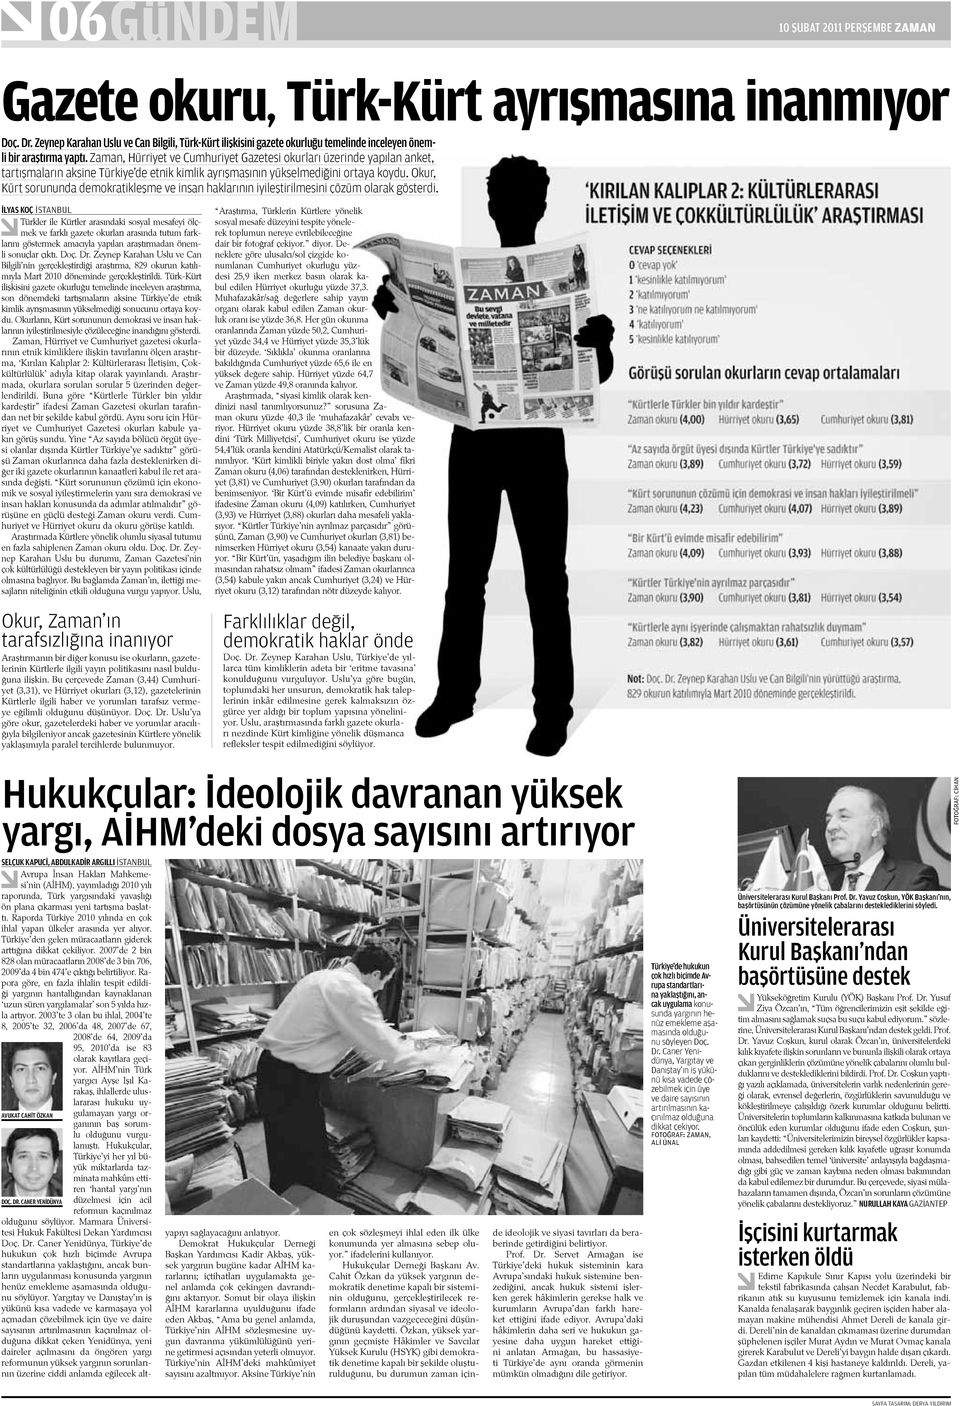 Zaman, Hürriyet ve Cumhuriyet Gazetesi okurları üzerinde yapılan anket, tartışmaların aksine Türkiye de etnik kimlik ayrışmasının yükselmediğini ortaya koydu.